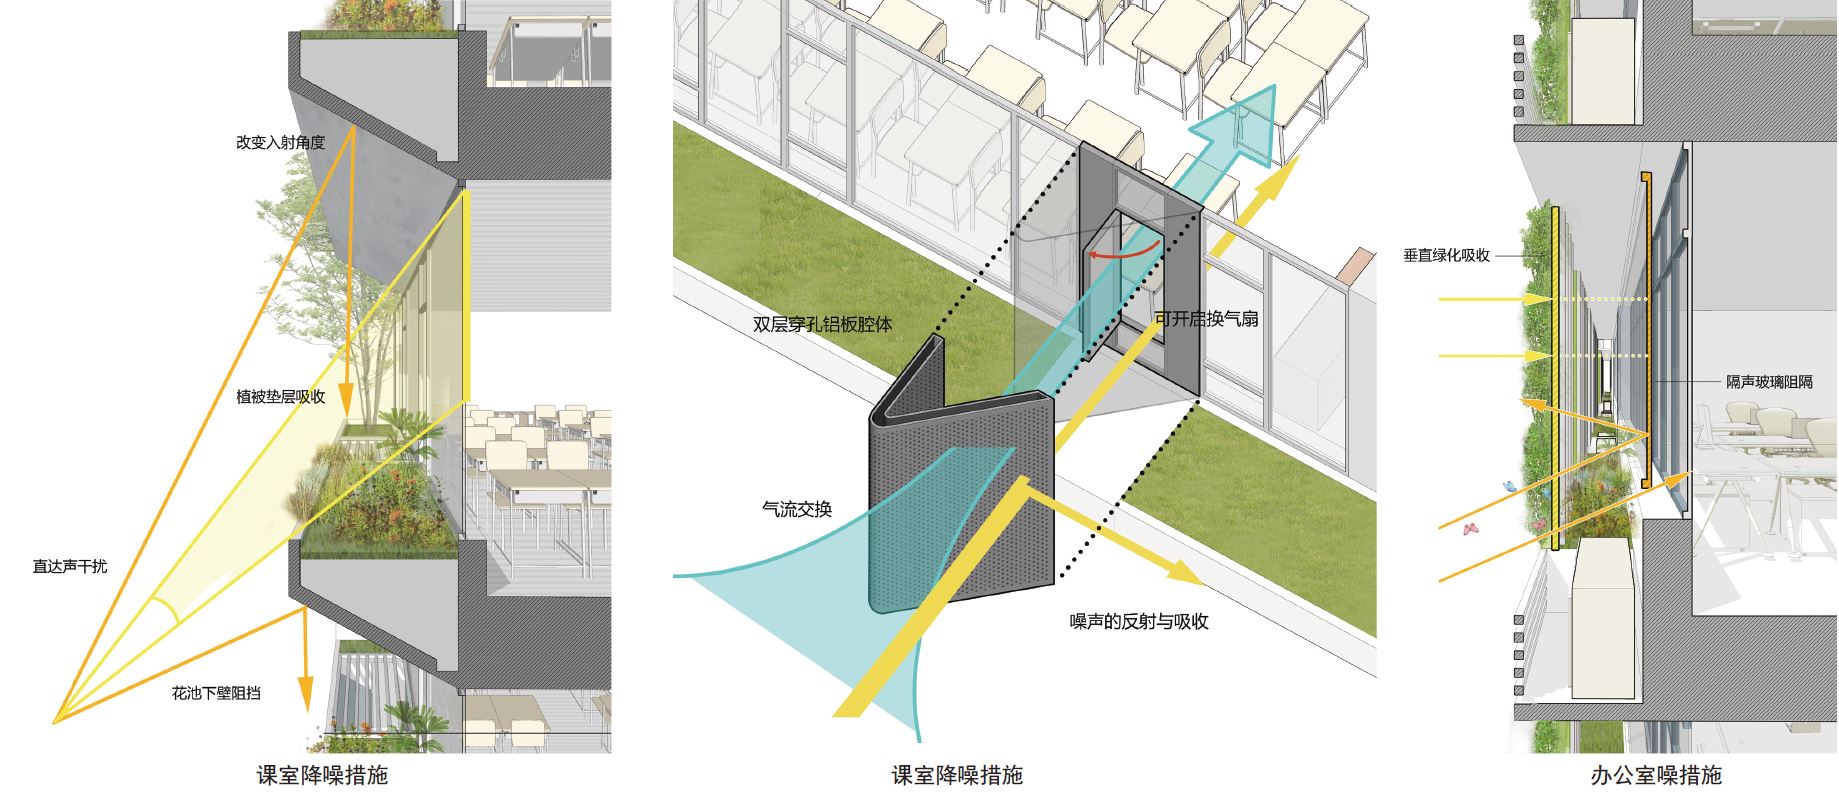 图62. 东意的新洲小学深化案中对建筑构件形态、绿化配置与降噪性能的分析